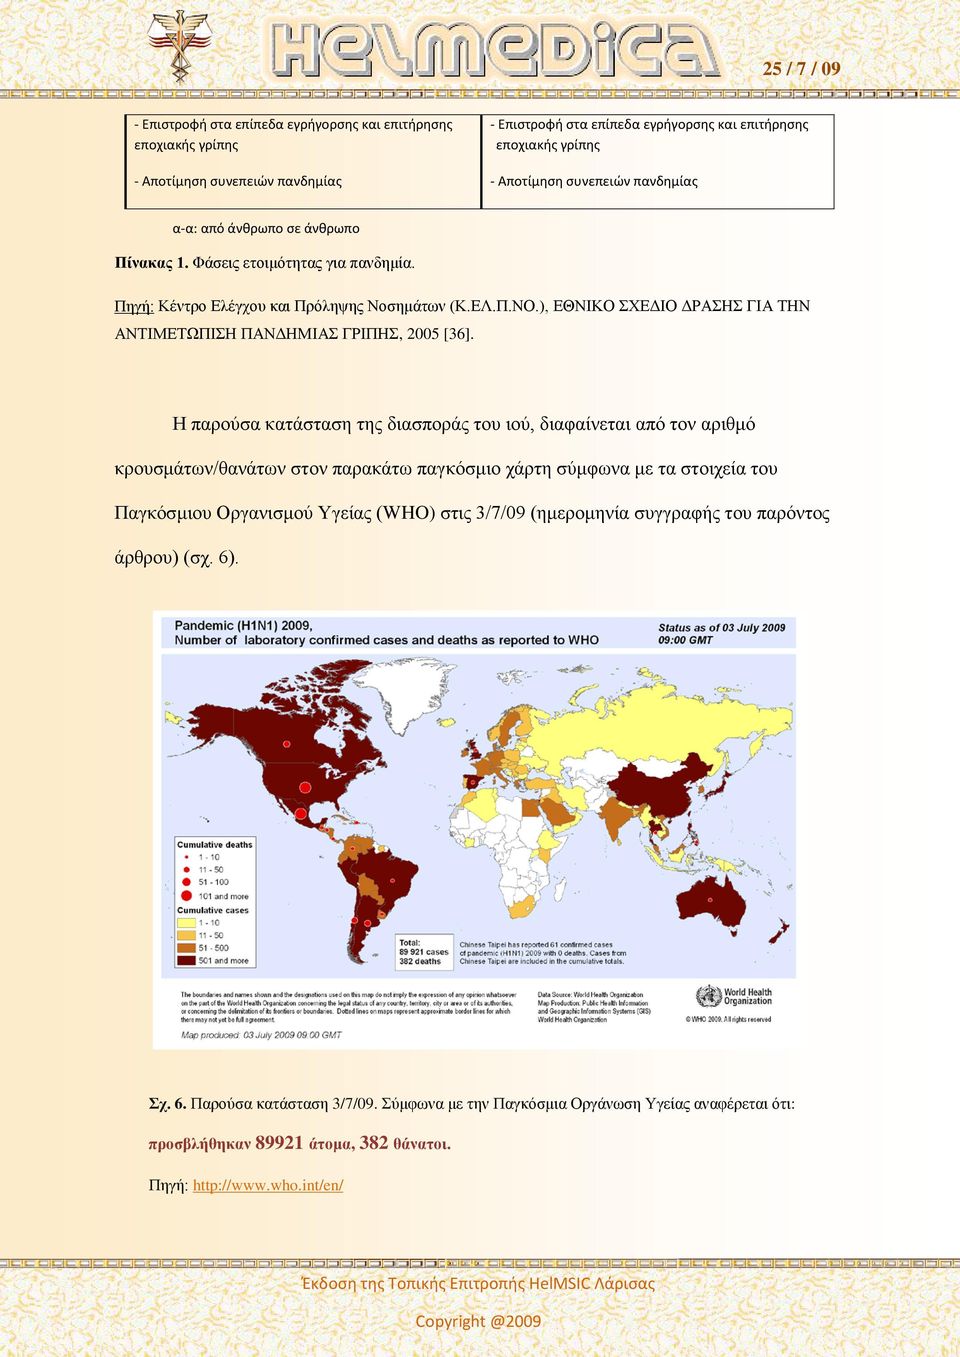 Η παρούσα κατάσταση της διασποράς του ιού, διαφαίνεται από τον αριθμό κρουσμάτων/θανάτων στον παρακάτω παγκόσμιο χάρτη σύμφωνα με τα στοιχεία του Παγκόσμιου Οργανισμού Υγείας (WHO) στις 3/7/09